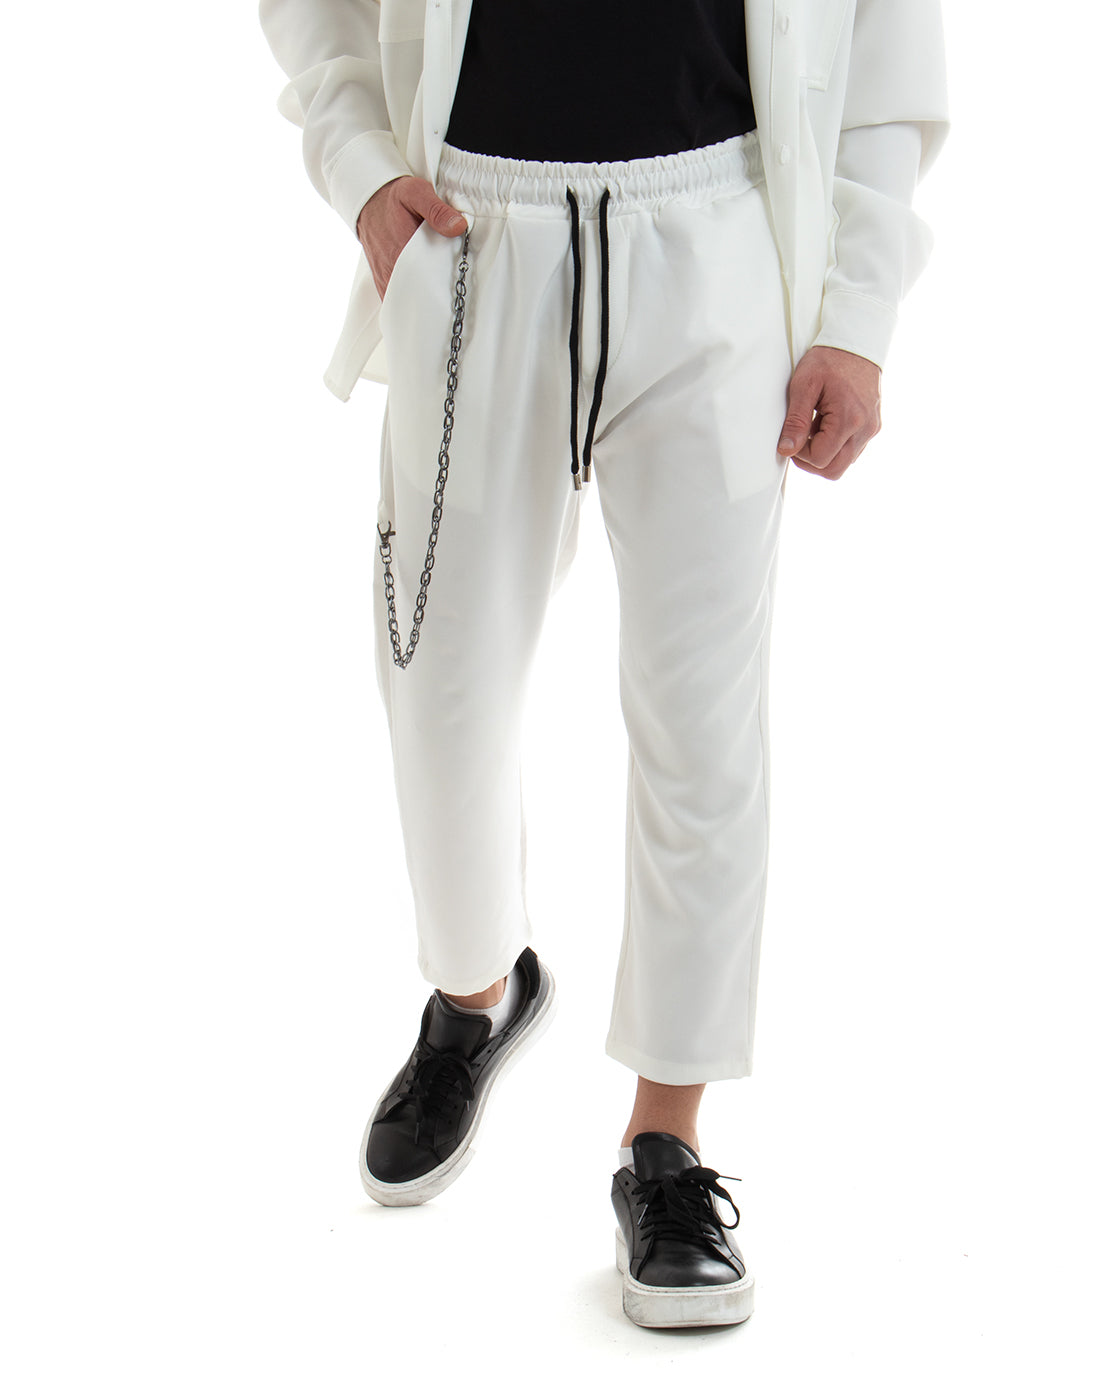 Completo Set Coordinato Uomo Viscosa Camicia Con Colletto Pantaloni Outfit Bianco GIOSAL-OU2254A